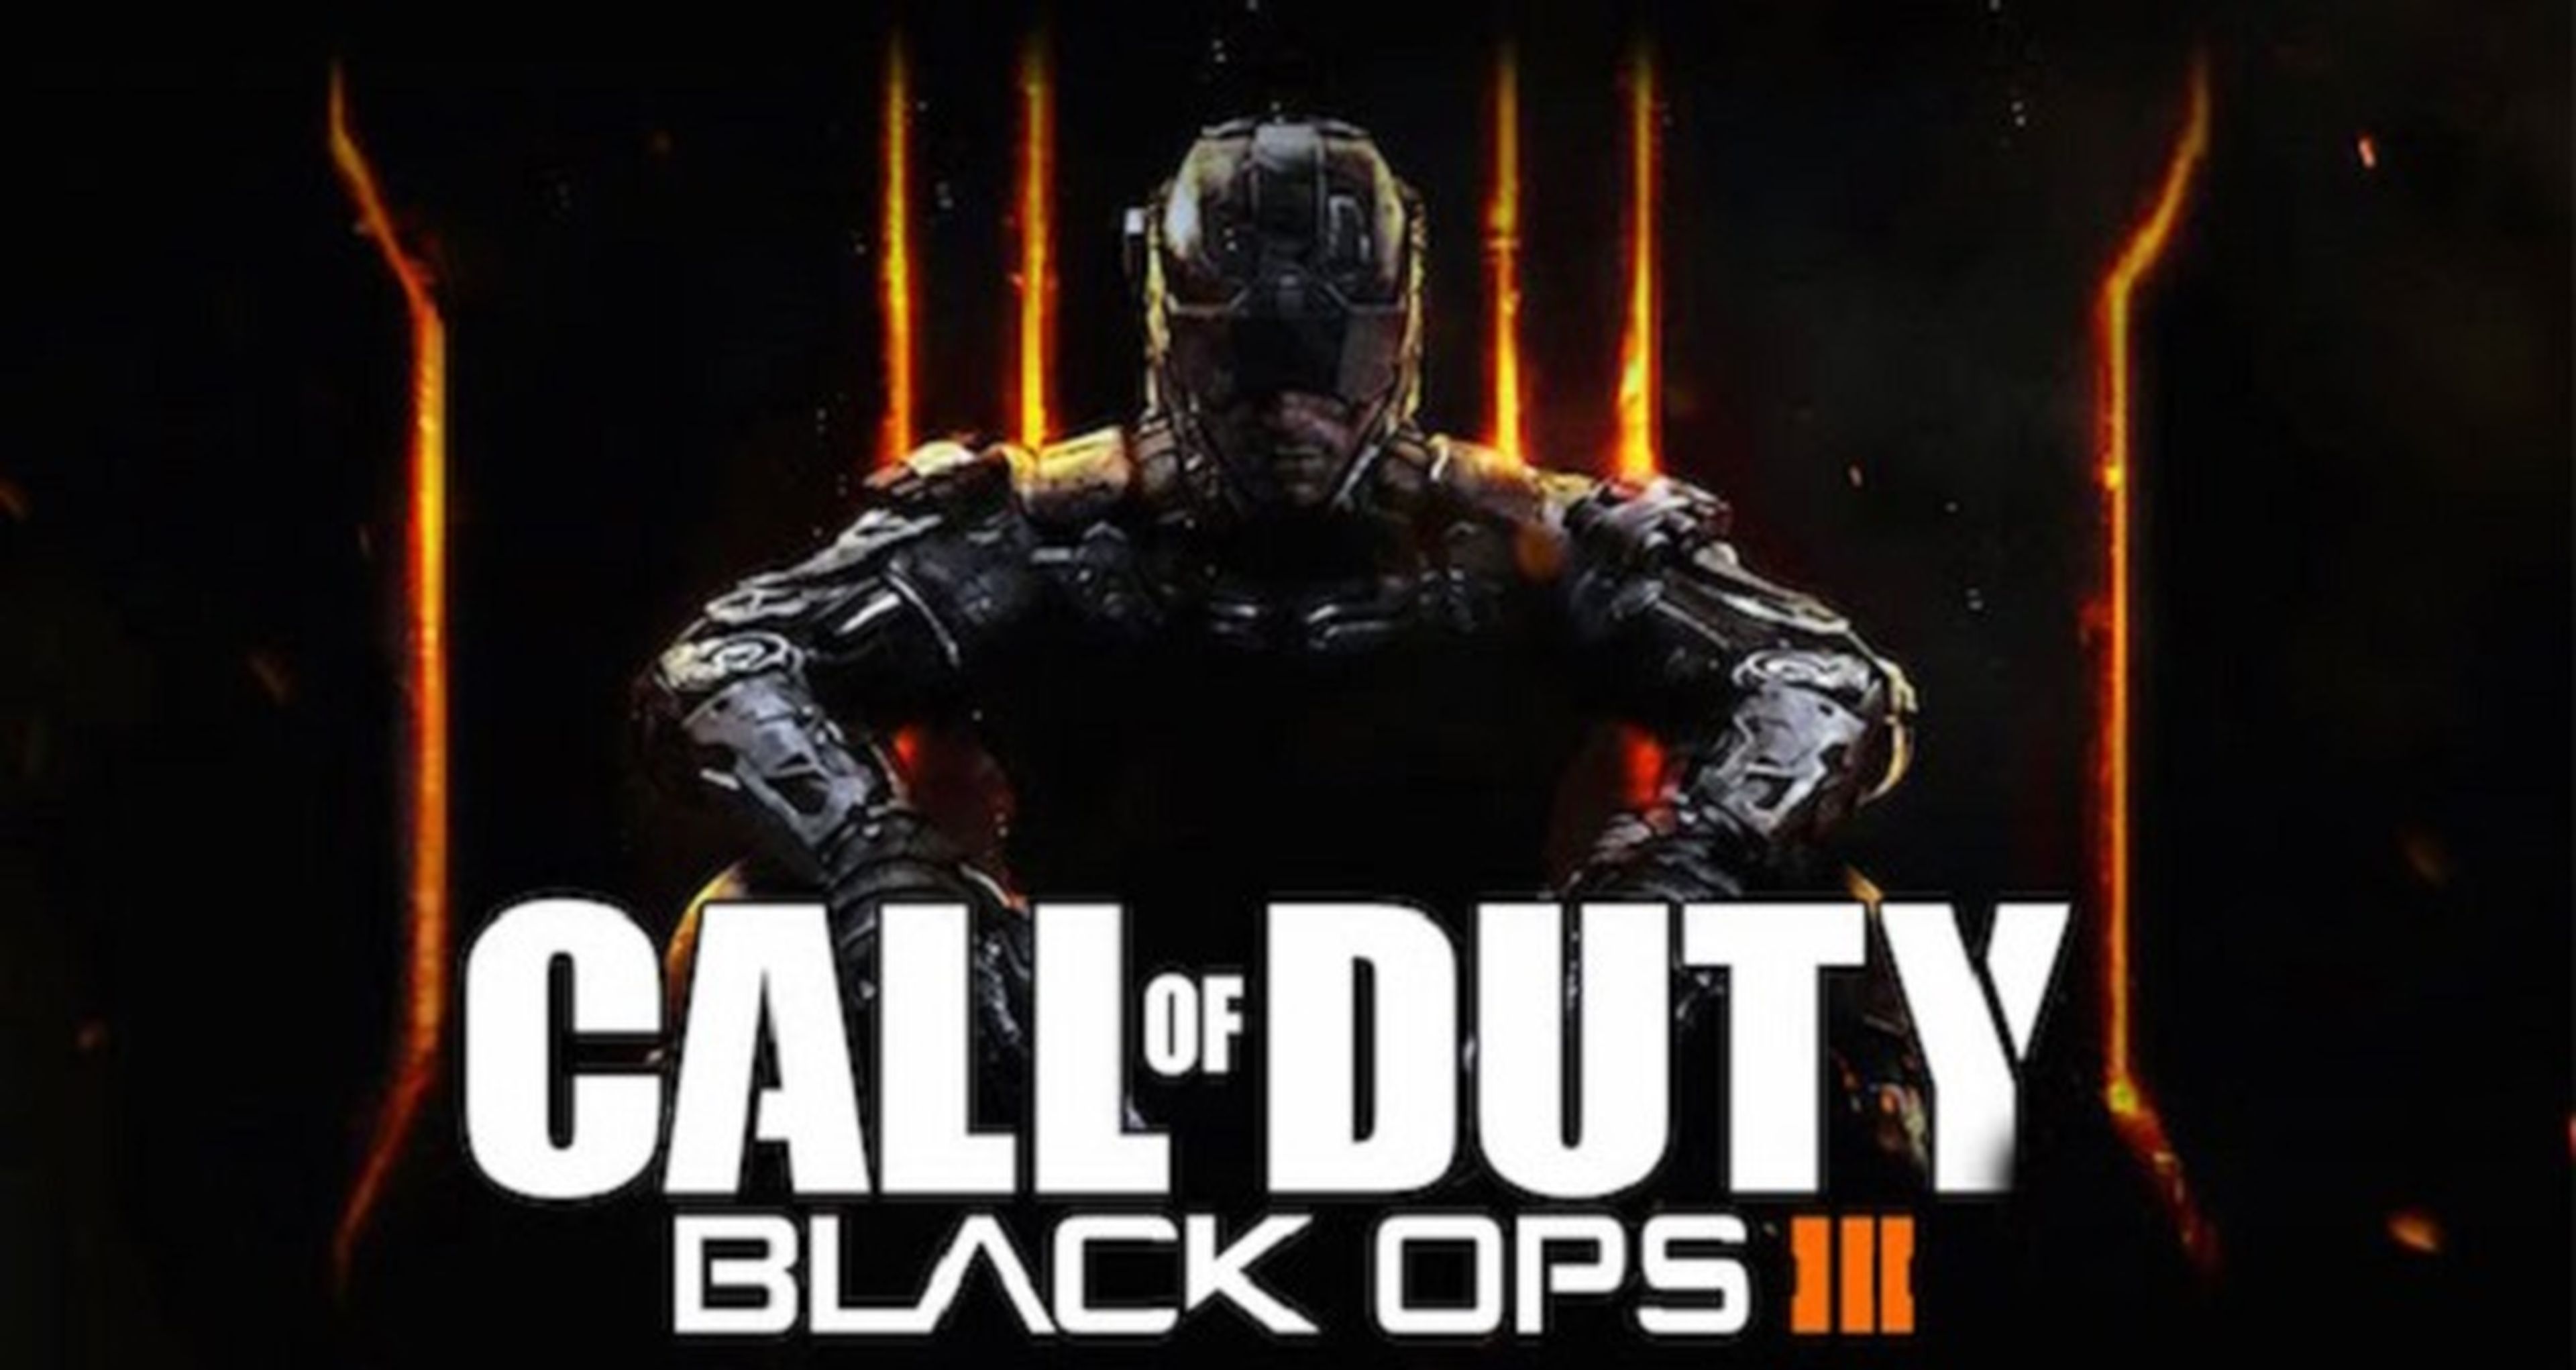 Call of Duty Black Ops 3, coordenadas de lugares reales en su teaser